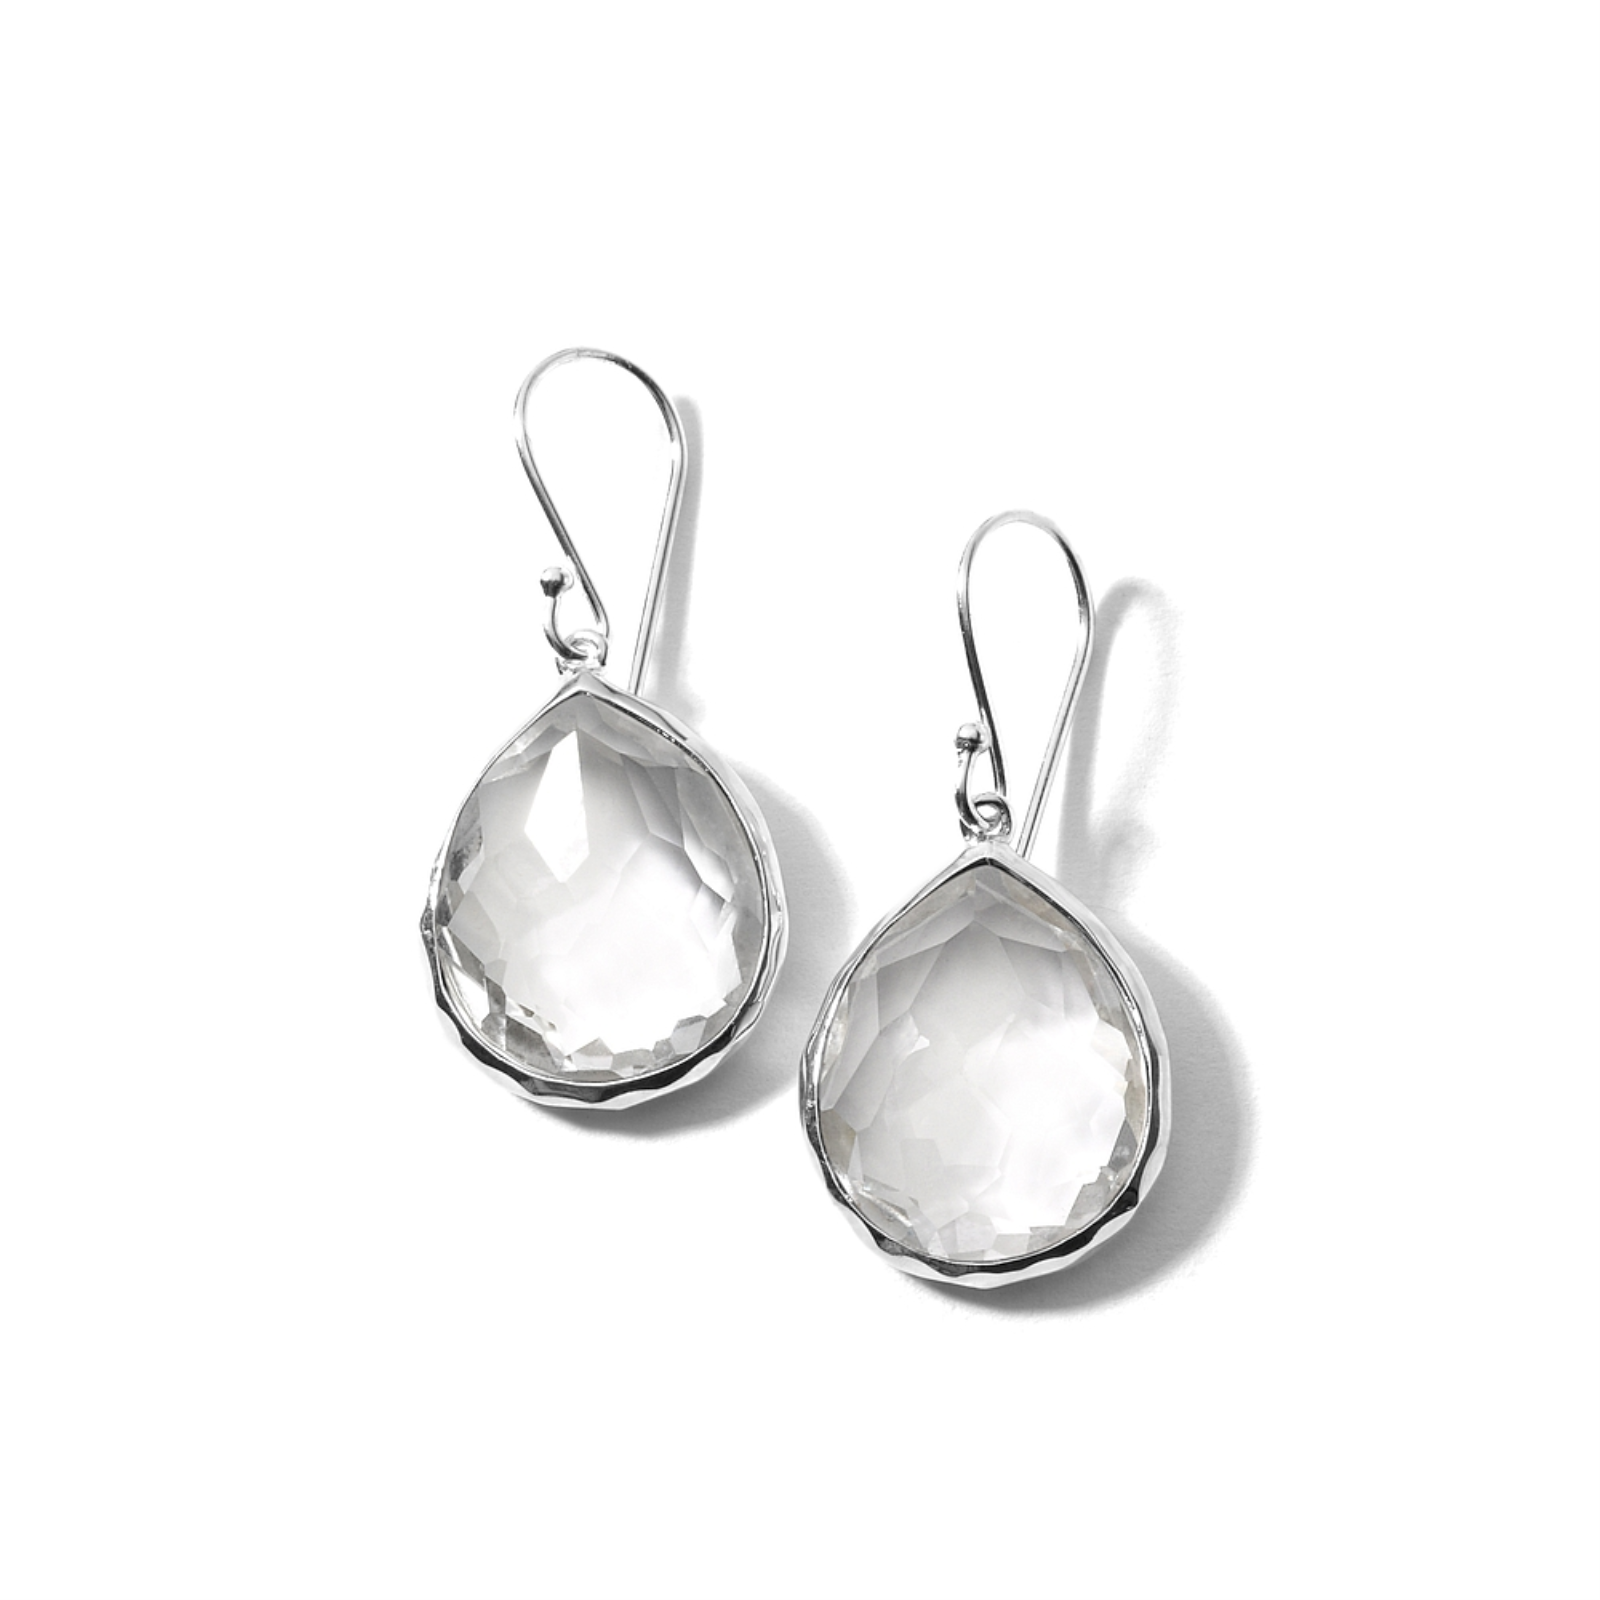 Silver Small Teardrop Rock Candy Earrings